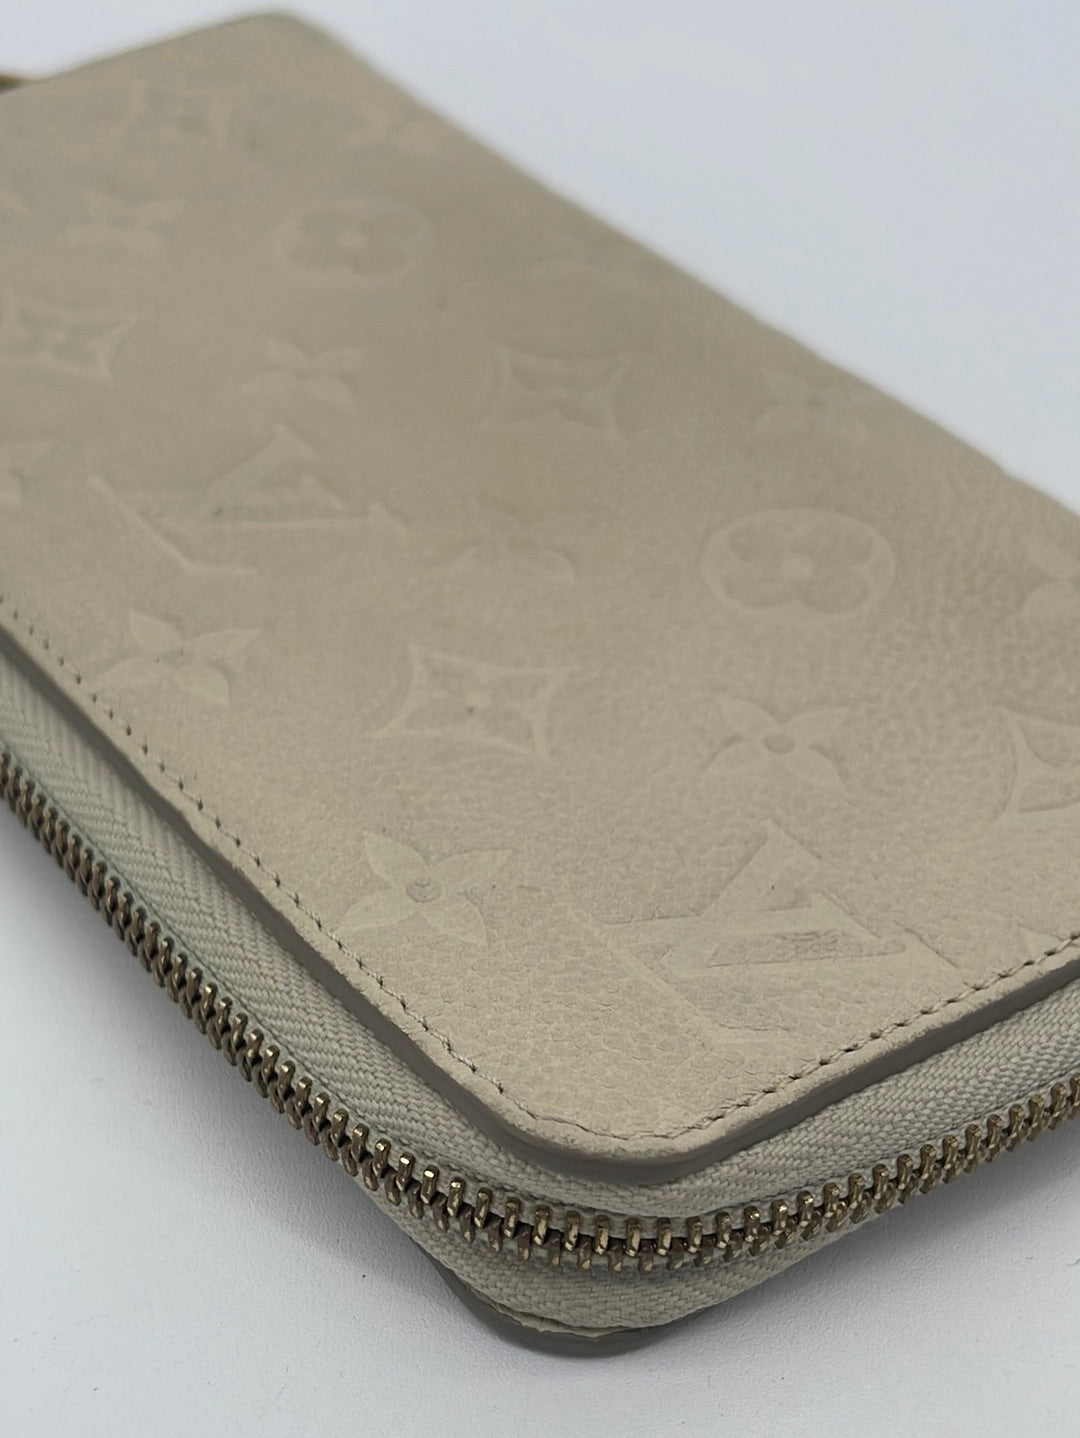 Authentic Louis Vuitton Ivory Empreinte Leather Long Zippy Wallet